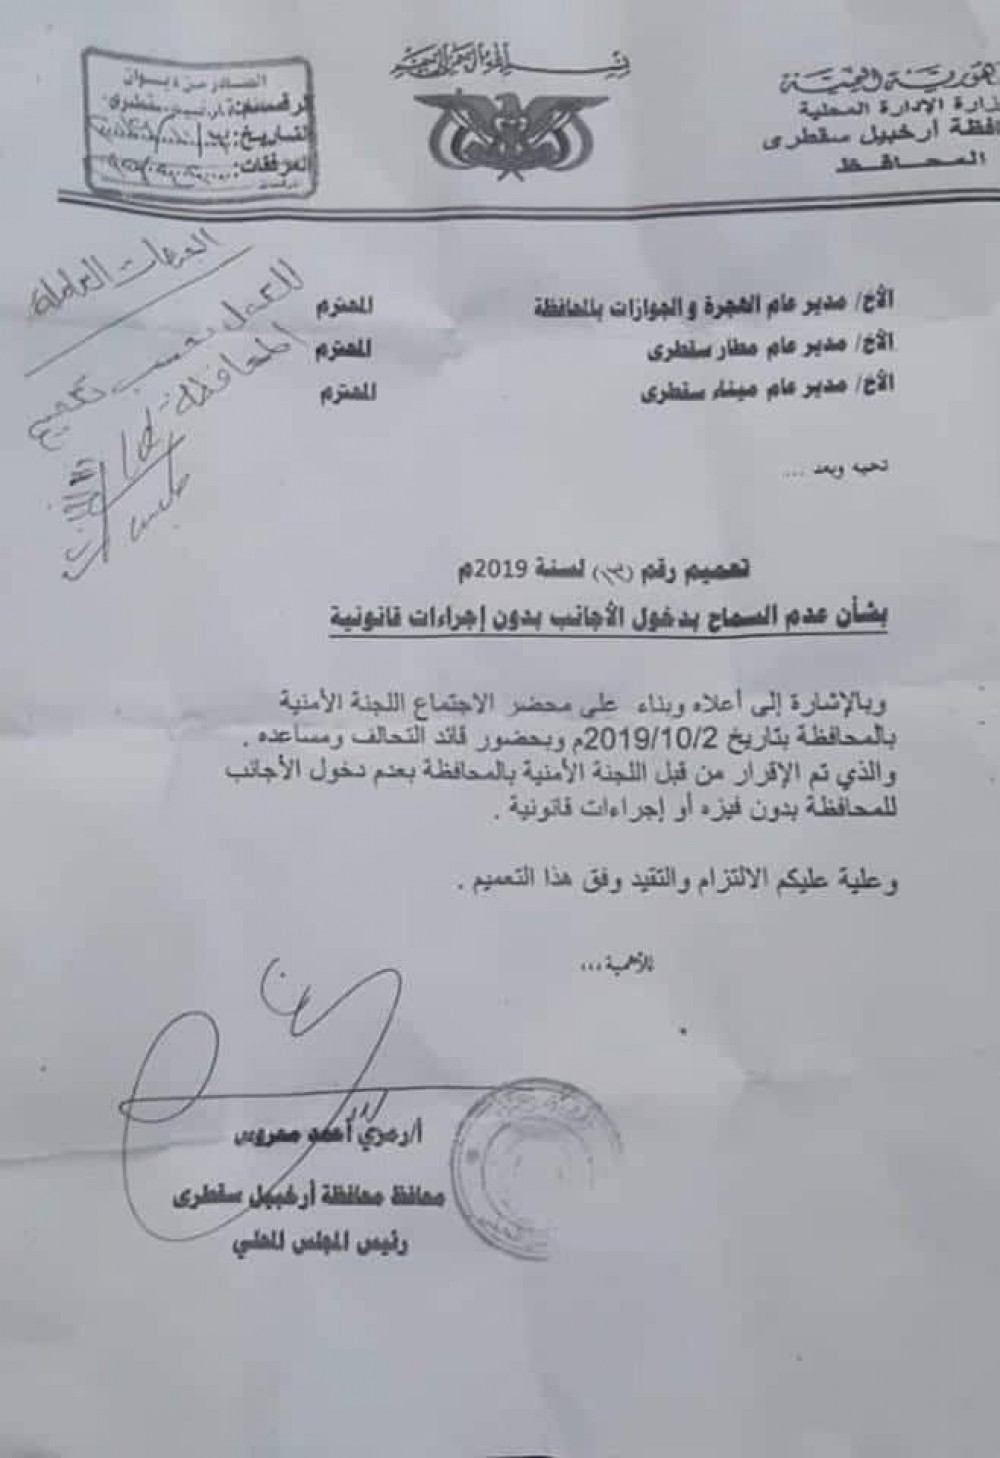 السلطة المحلية بأرخبيل سقطرى تمنع دخول الأجانب دون فيزة "وثيقة"